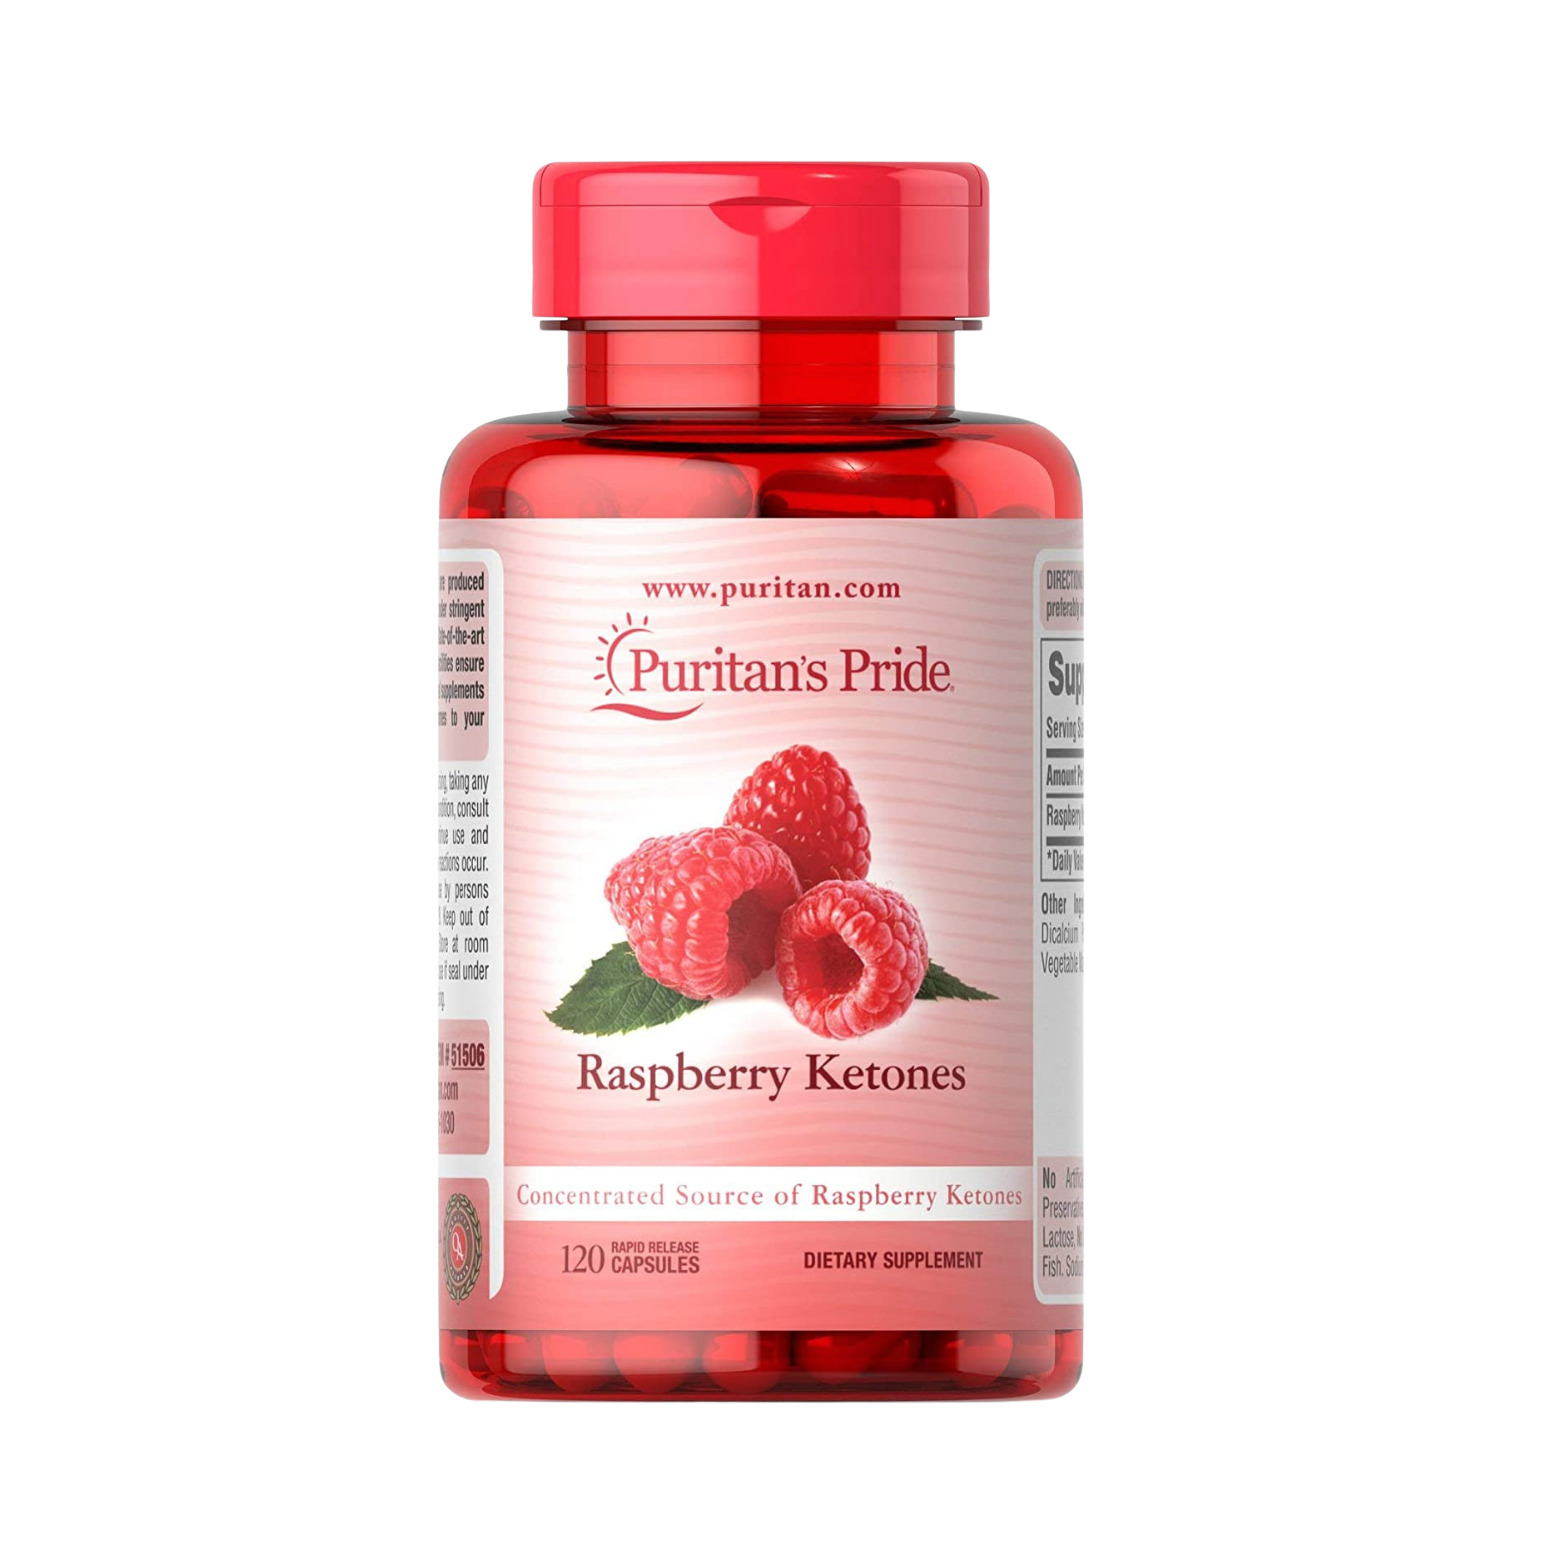 Viên uống hỗ trợ kiểm soát cân nặng Healthy Care puritan s pride raspberry